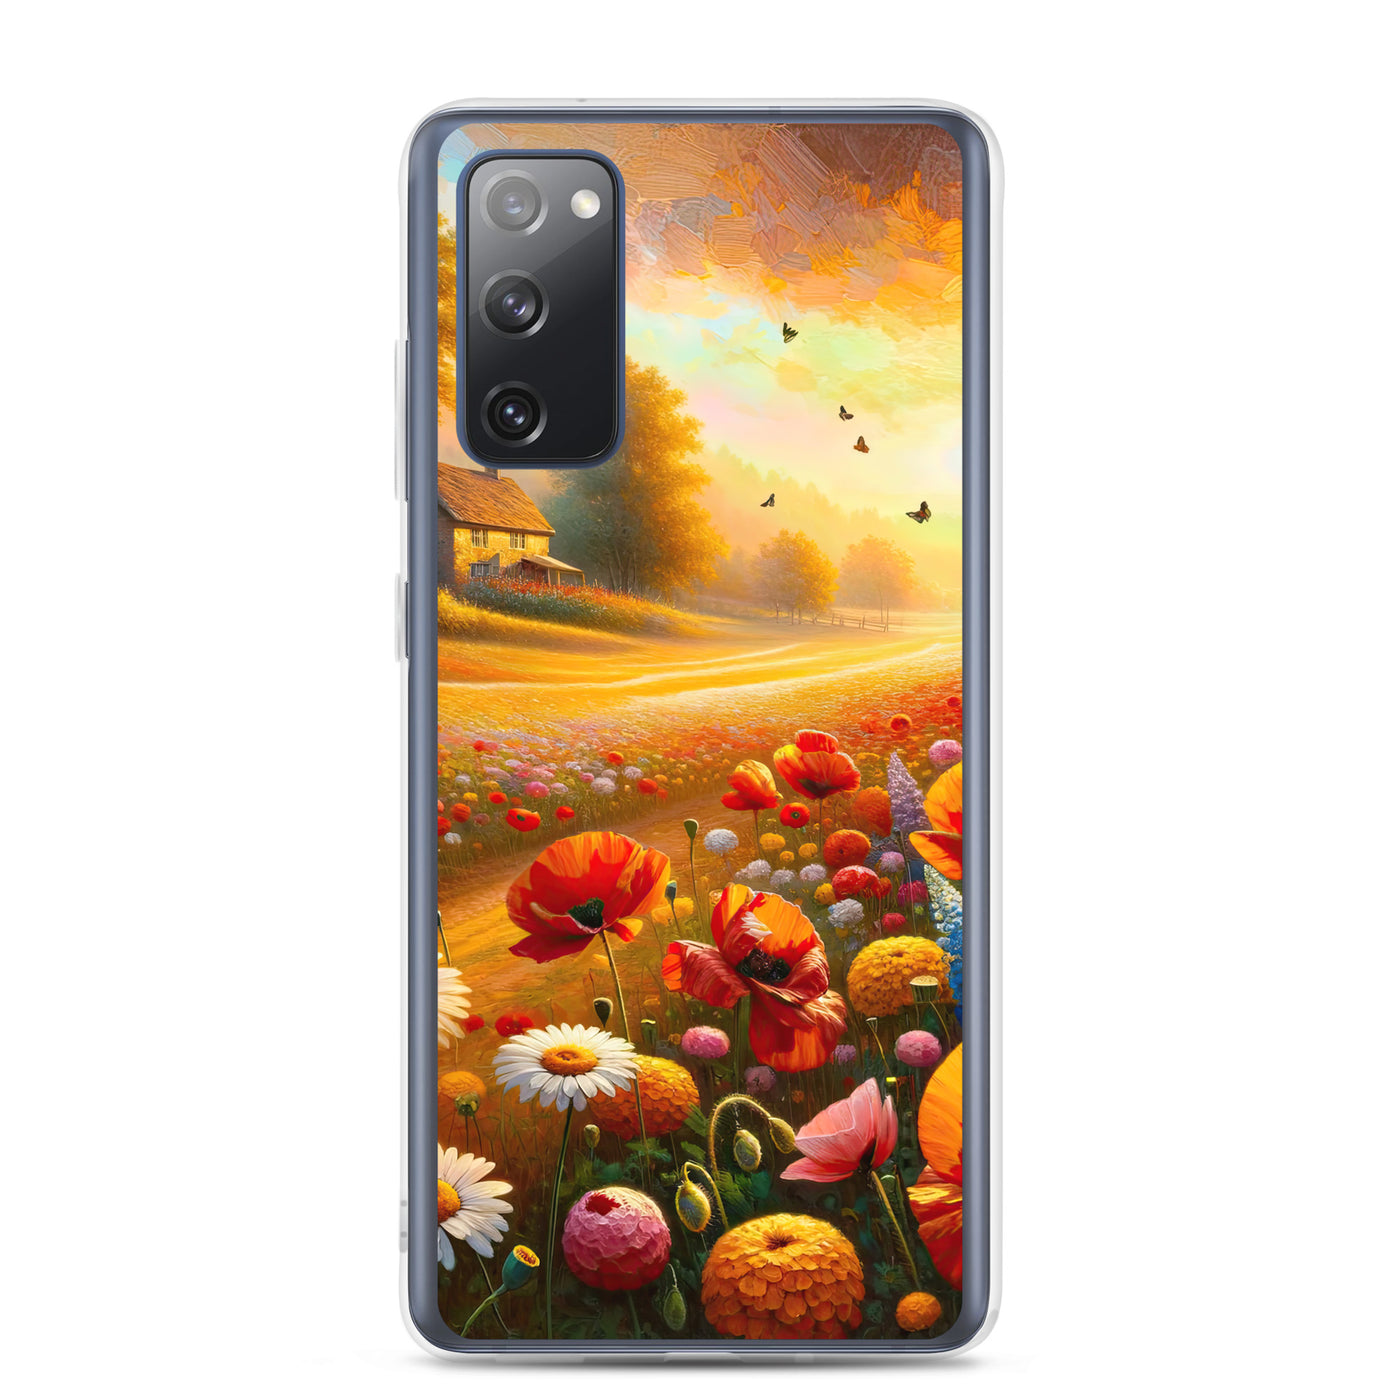 Ölgemälde eines Blumenfeldes im Sonnenuntergang, leuchtende Farbpalette - Samsung Schutzhülle (durchsichtig) camping xxx yyy zzz Samsung Galaxy S20 FE